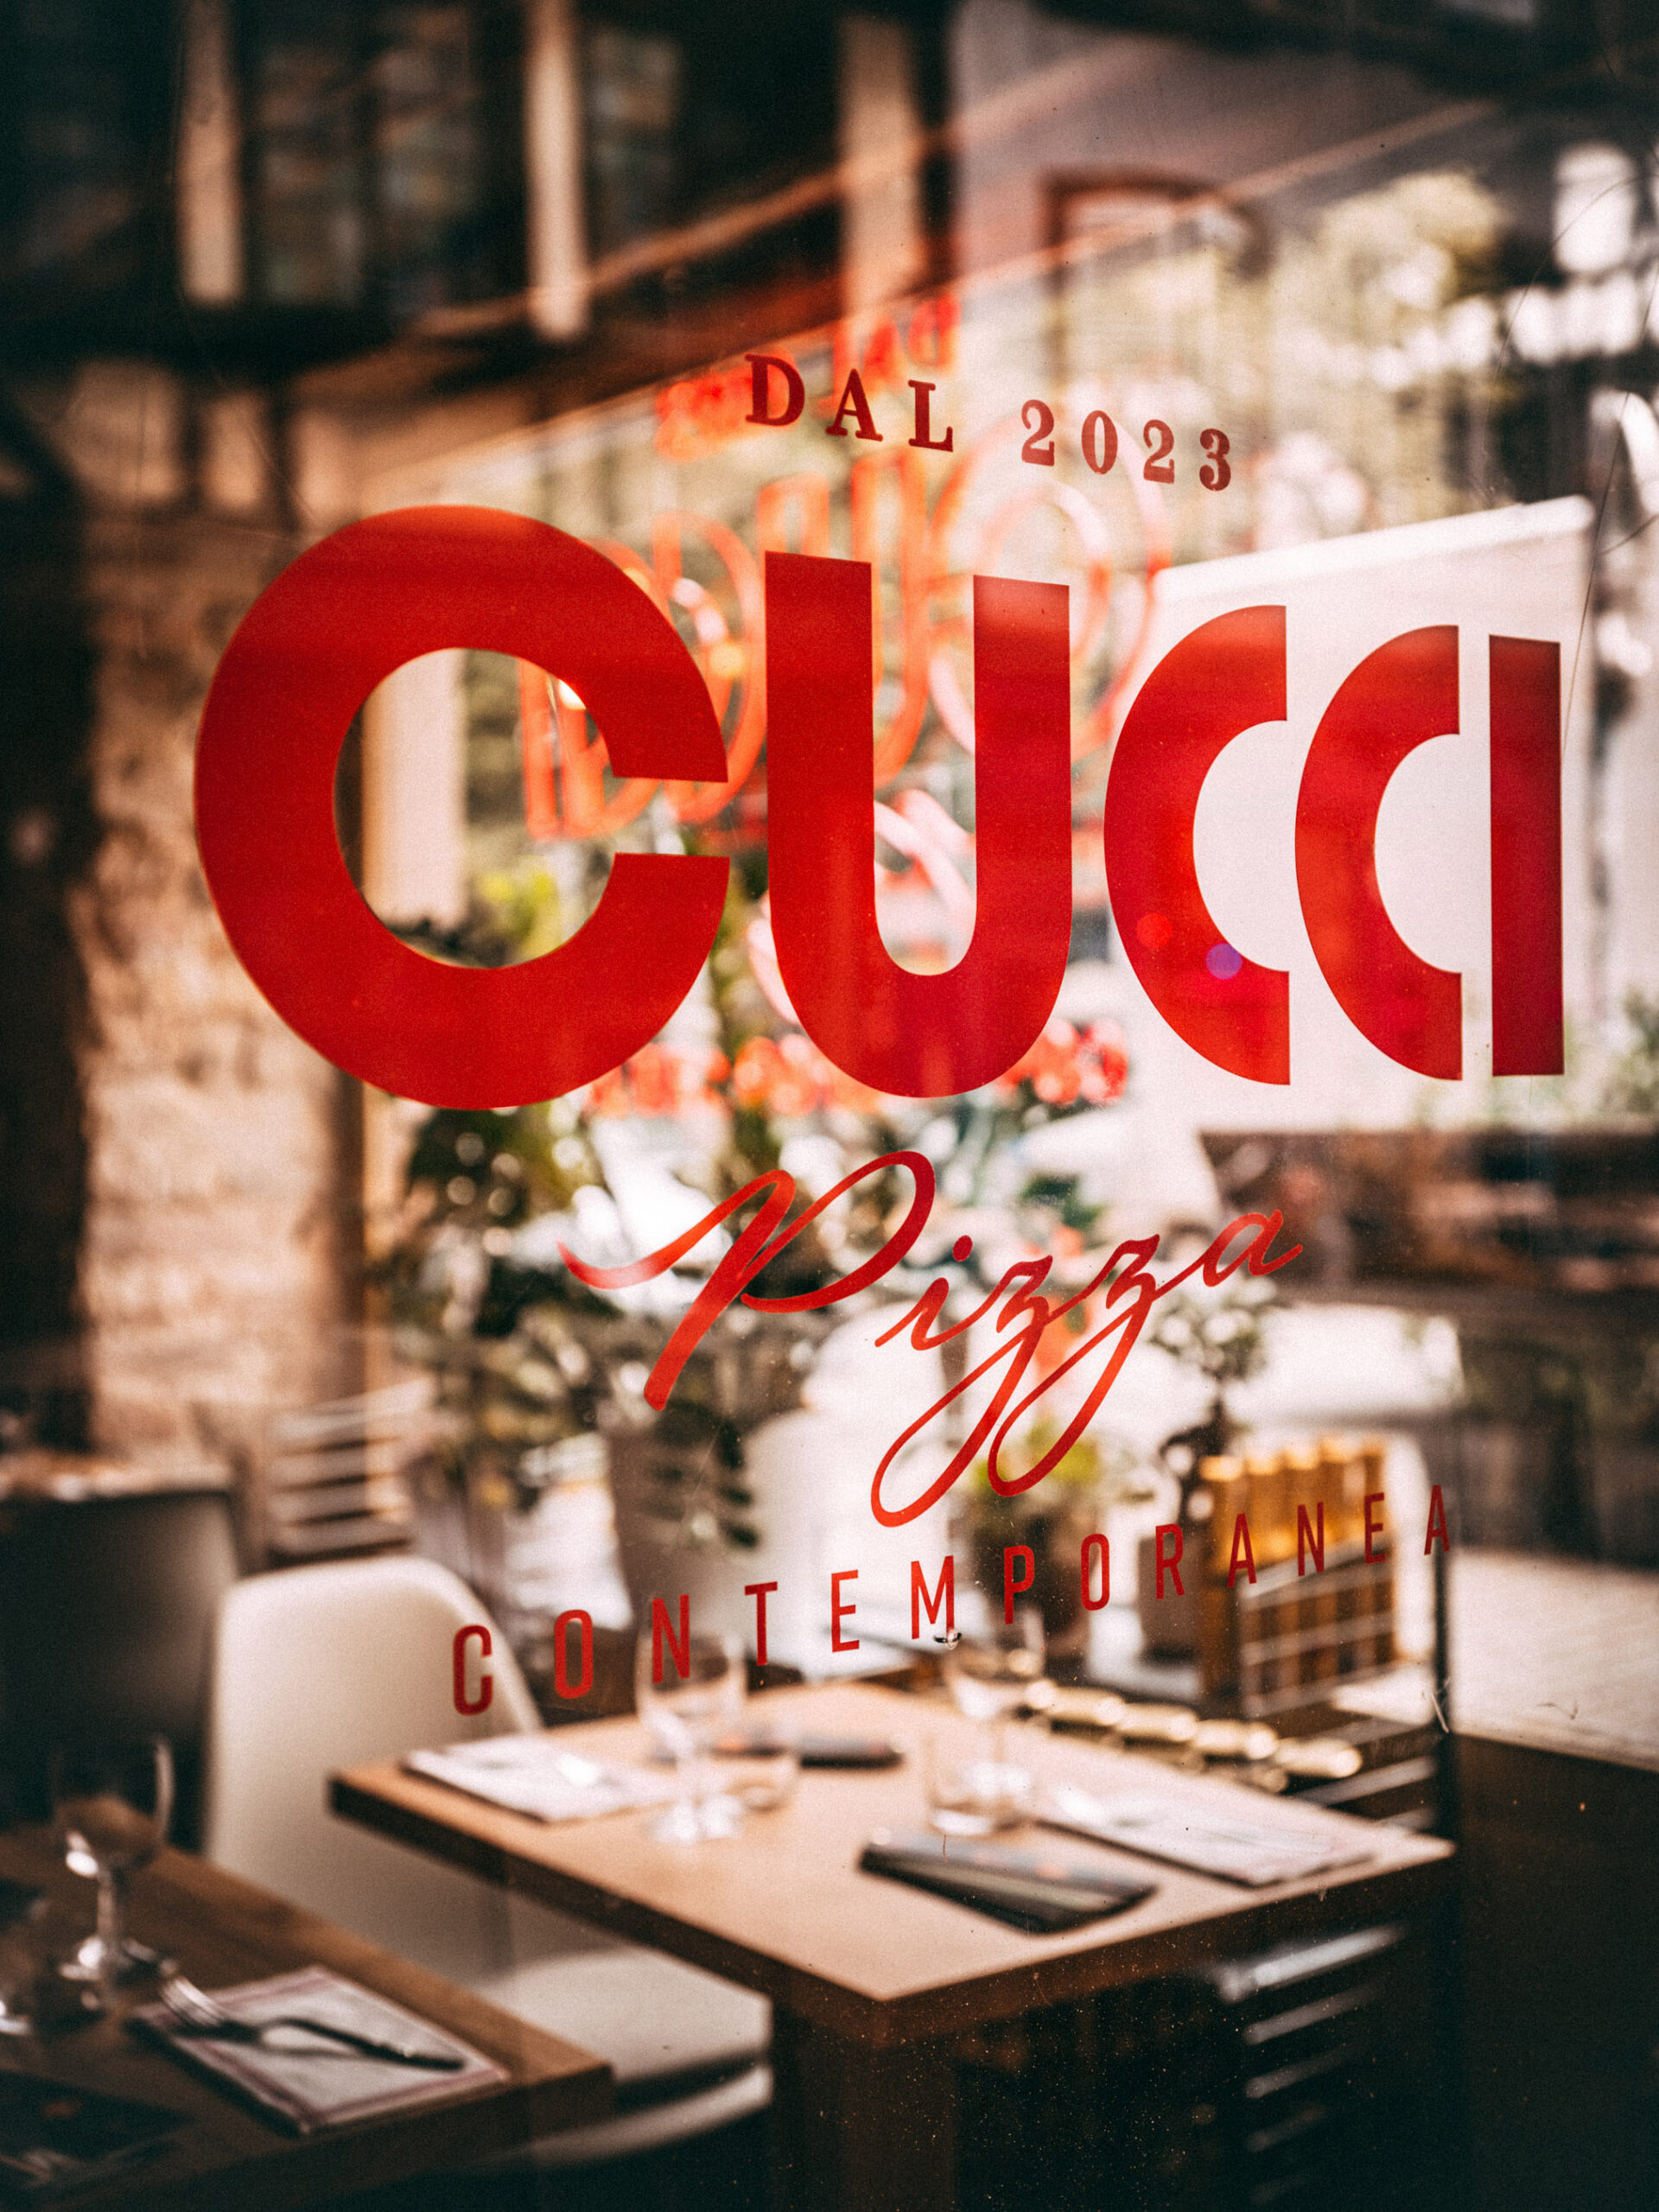 Cucci Strasbourg - Concept et branding restaurant italien de pizza contemporaines